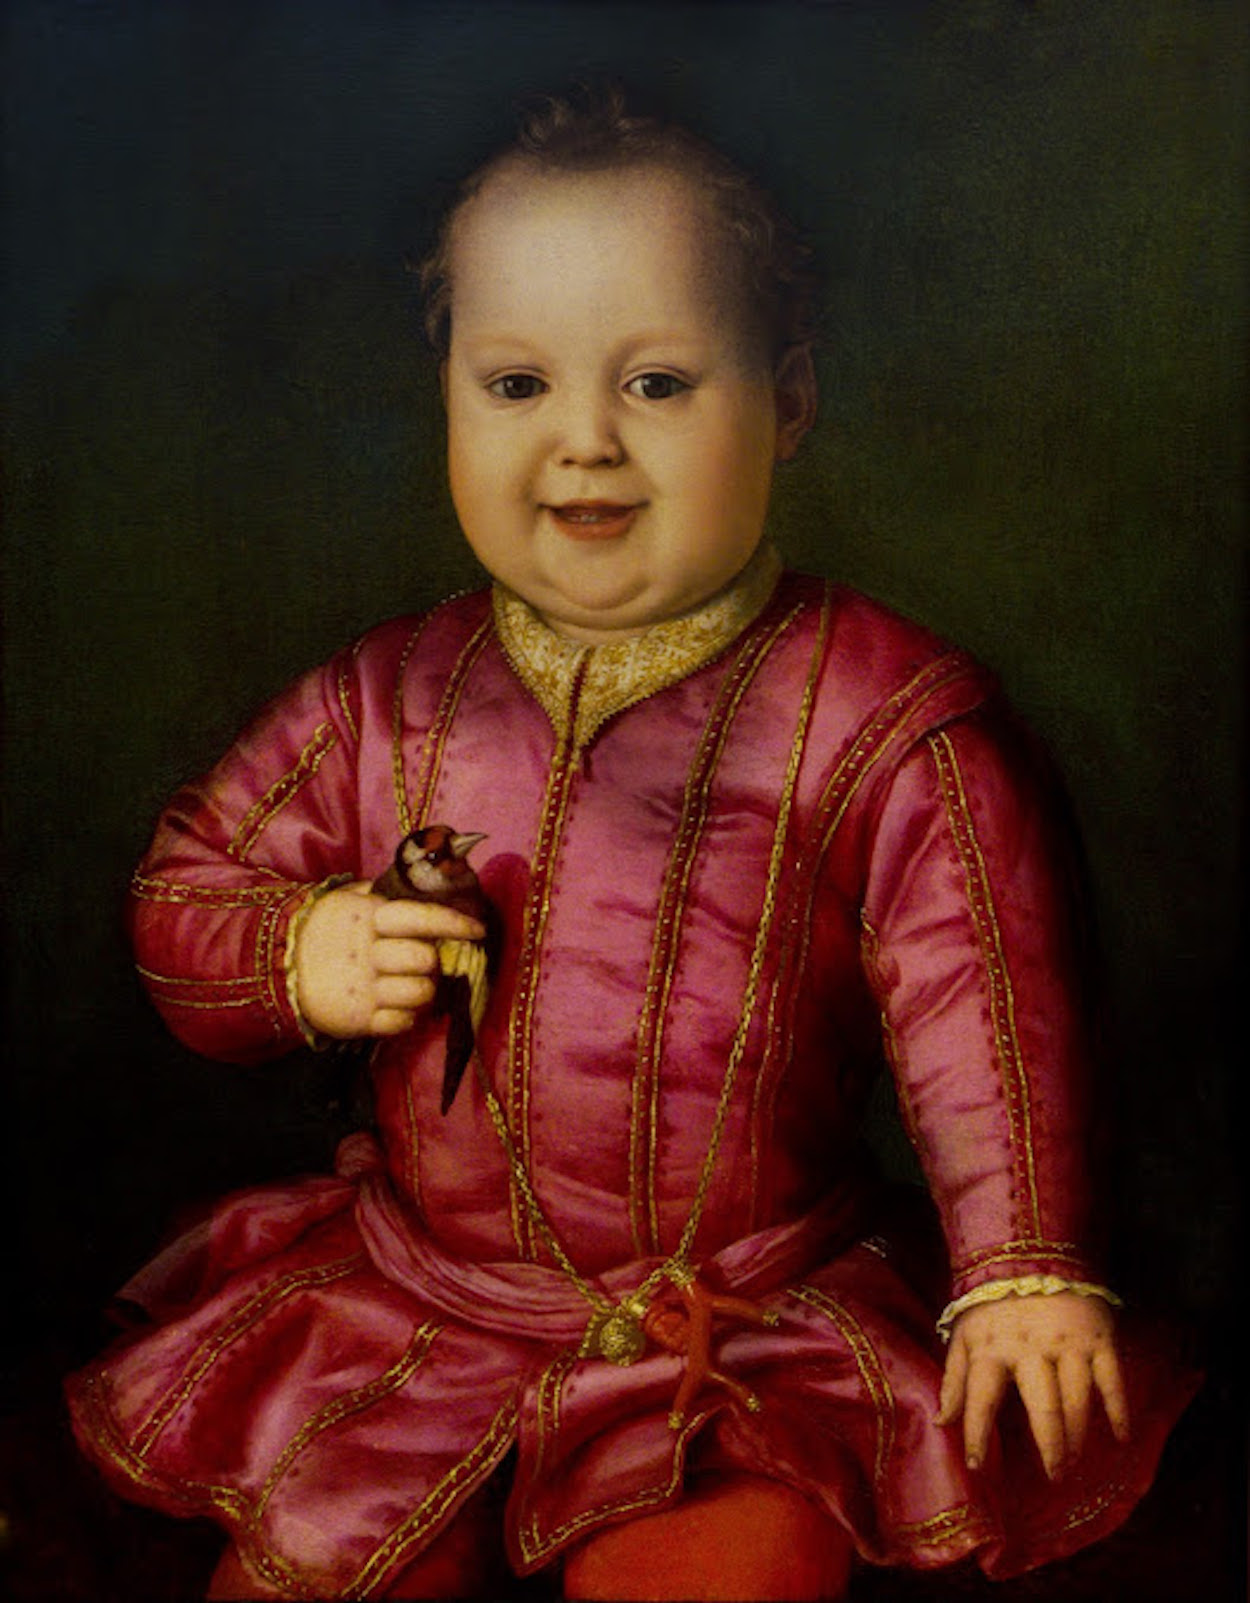 Giovanni de' Medici as a Child by Agnolo Bronzino - circa 1545 - 58 cm × 48 cm Galleria degli Uffizi